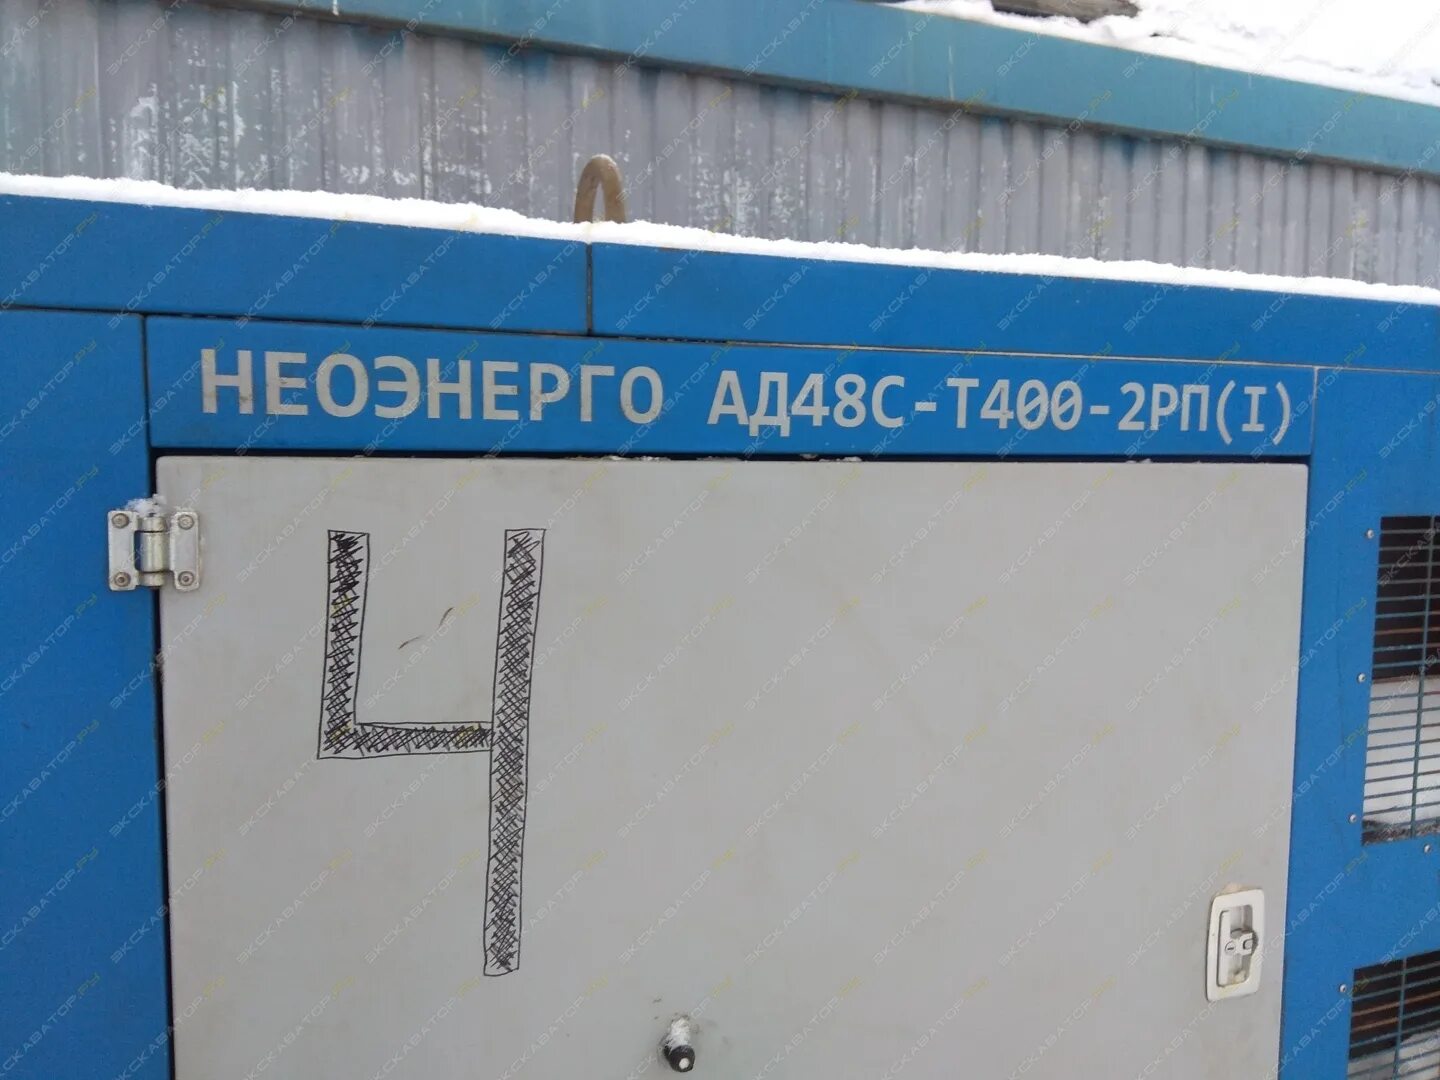 Ad 48 c. Неоэнерго. Дизельгенератор ЭДД-100-1-К. Неоэнерго контейнер. Дизель Генератор аренда Казахстан.